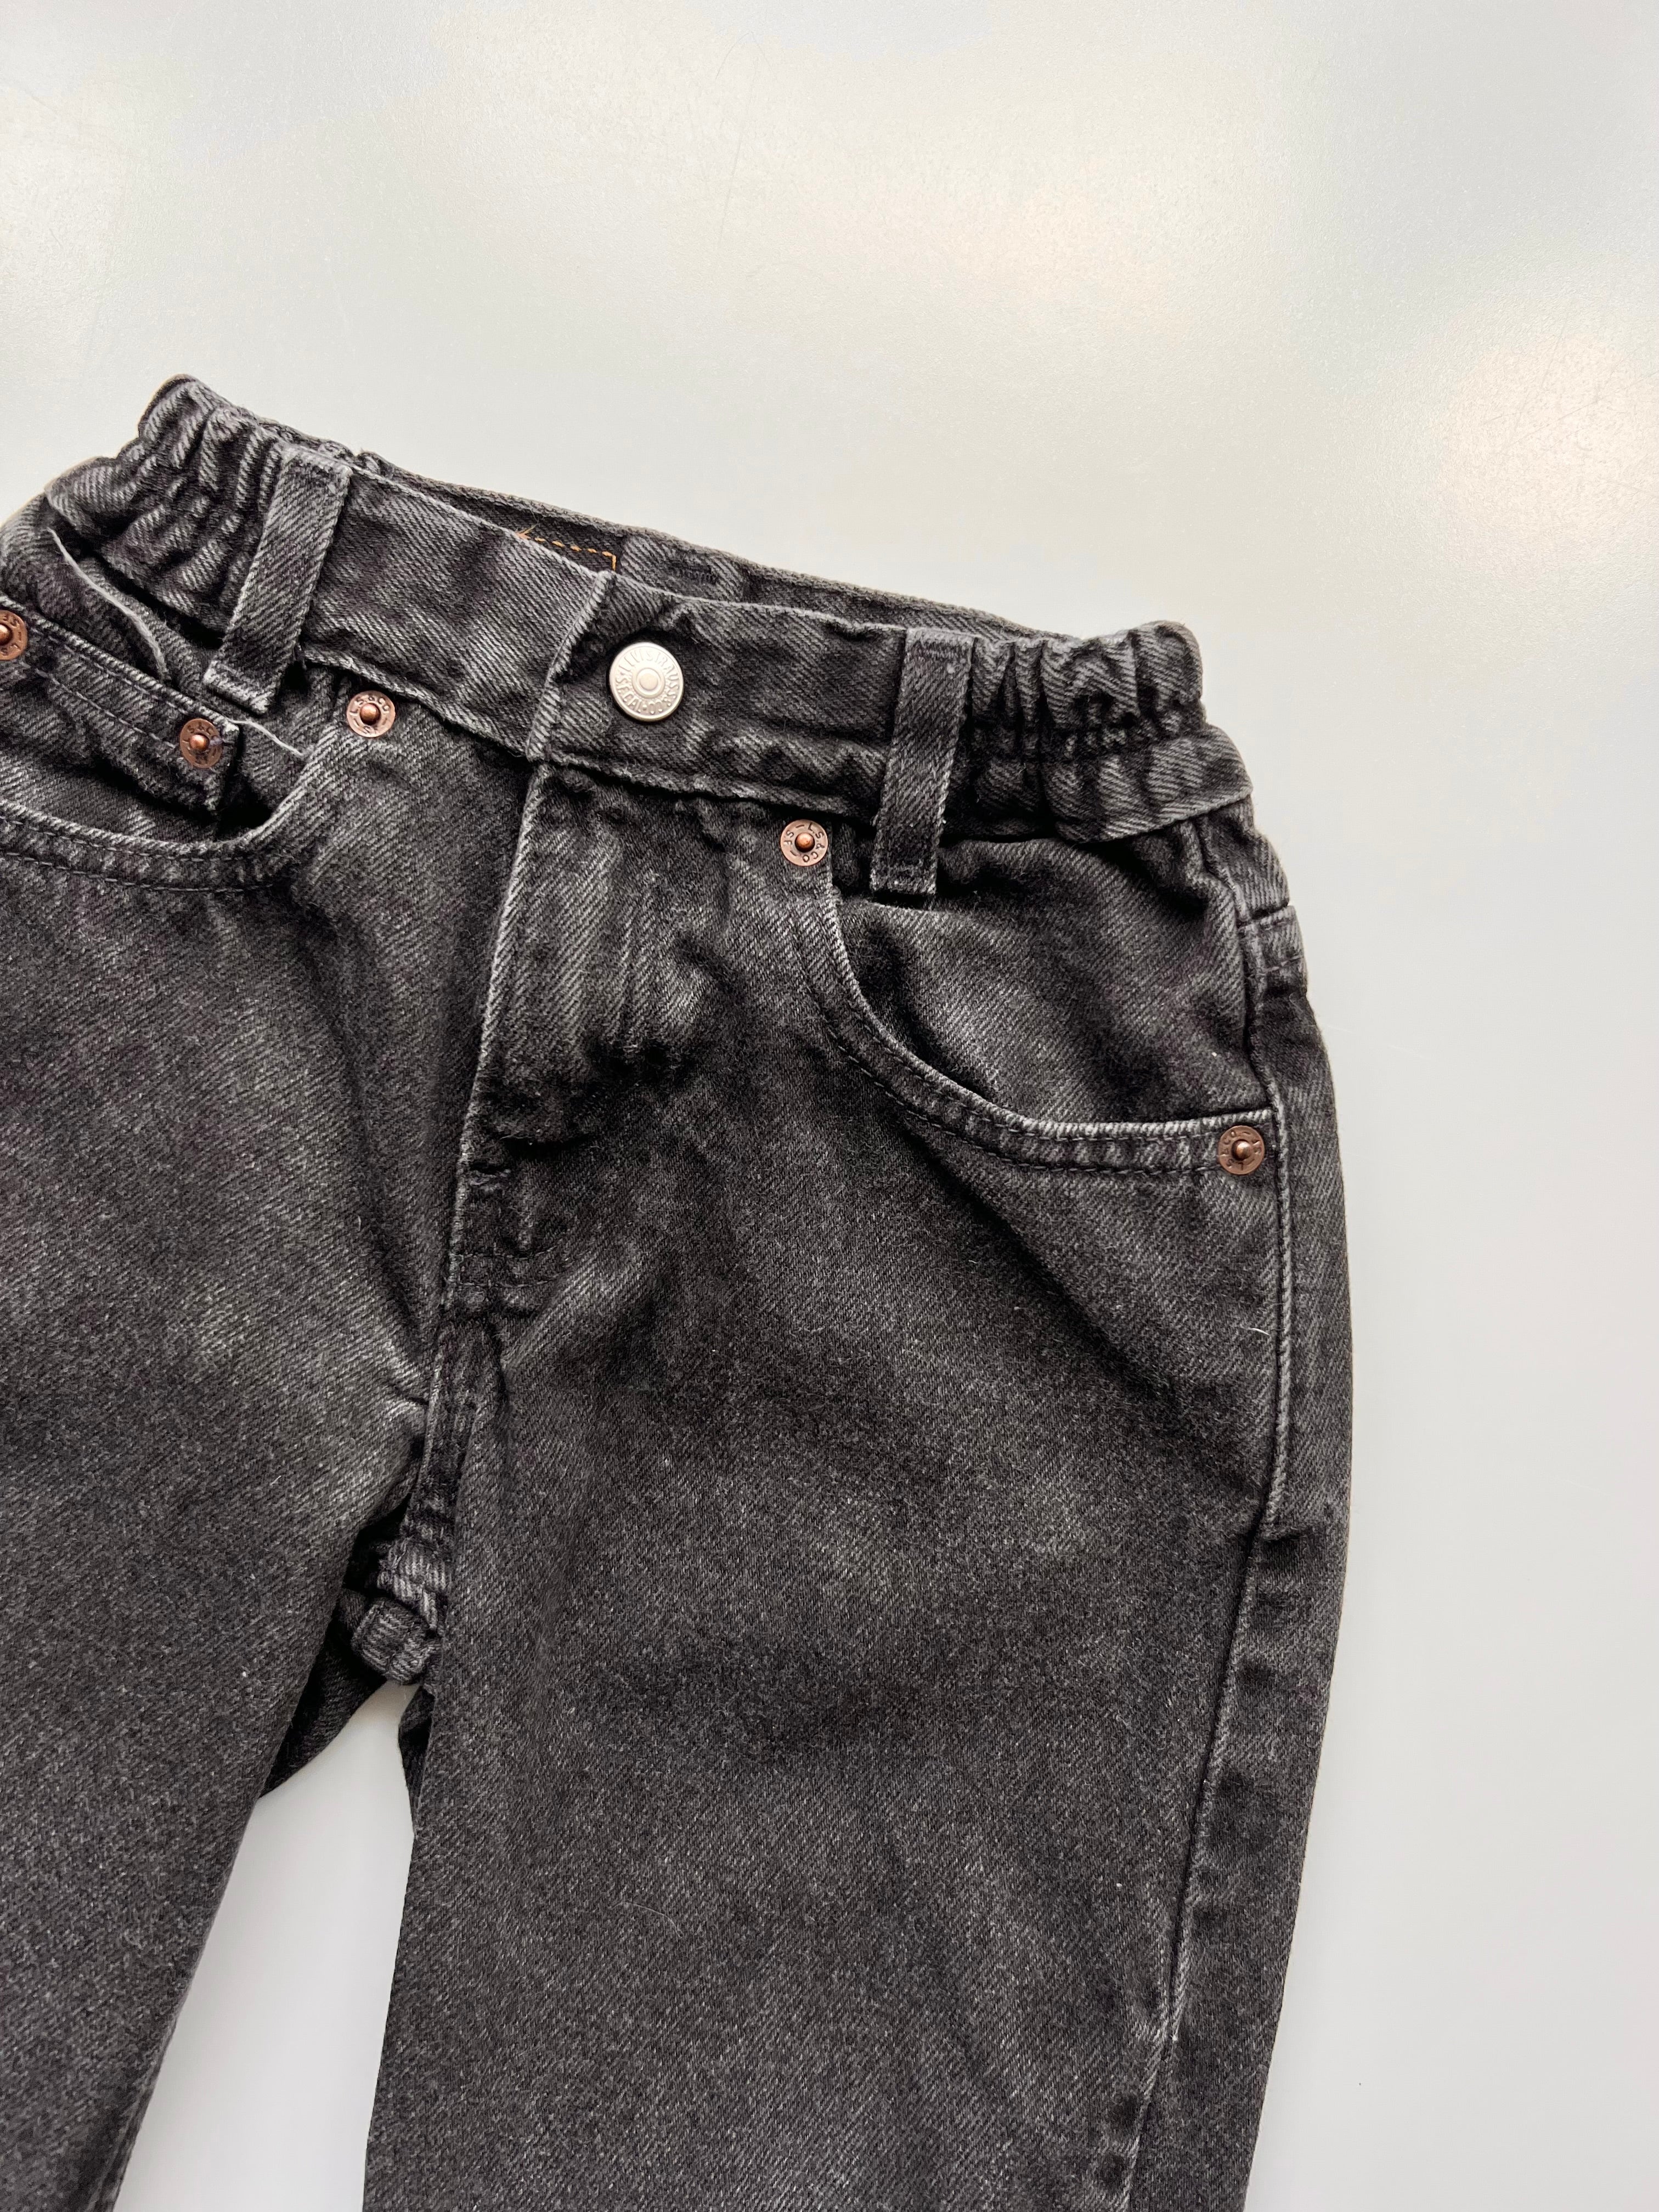 Levi's Vintage Washed Black 566 Loose Fit Jeans Age 4